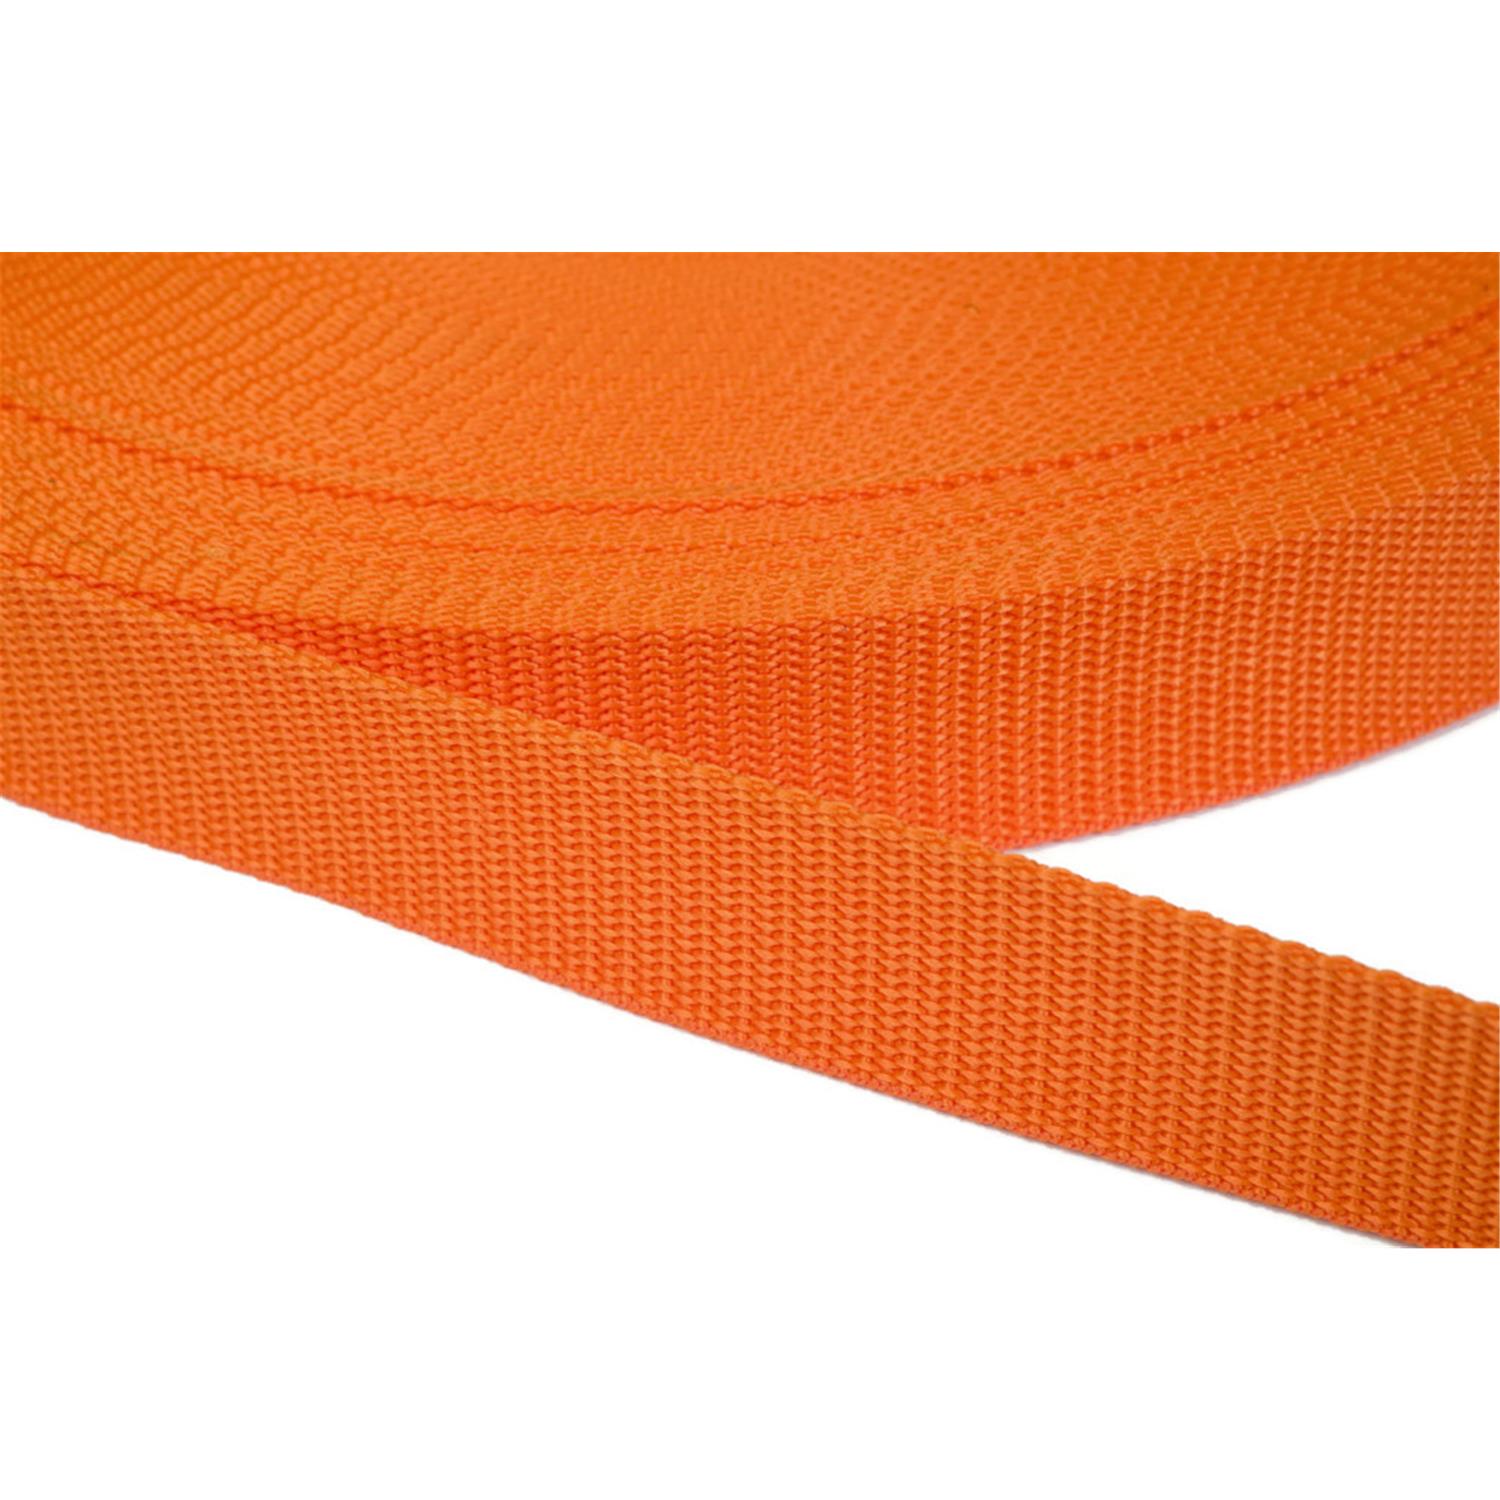 Gurtband 40mm breit aus Polypropylen in 41 Farben 11 - orange 6 Meter